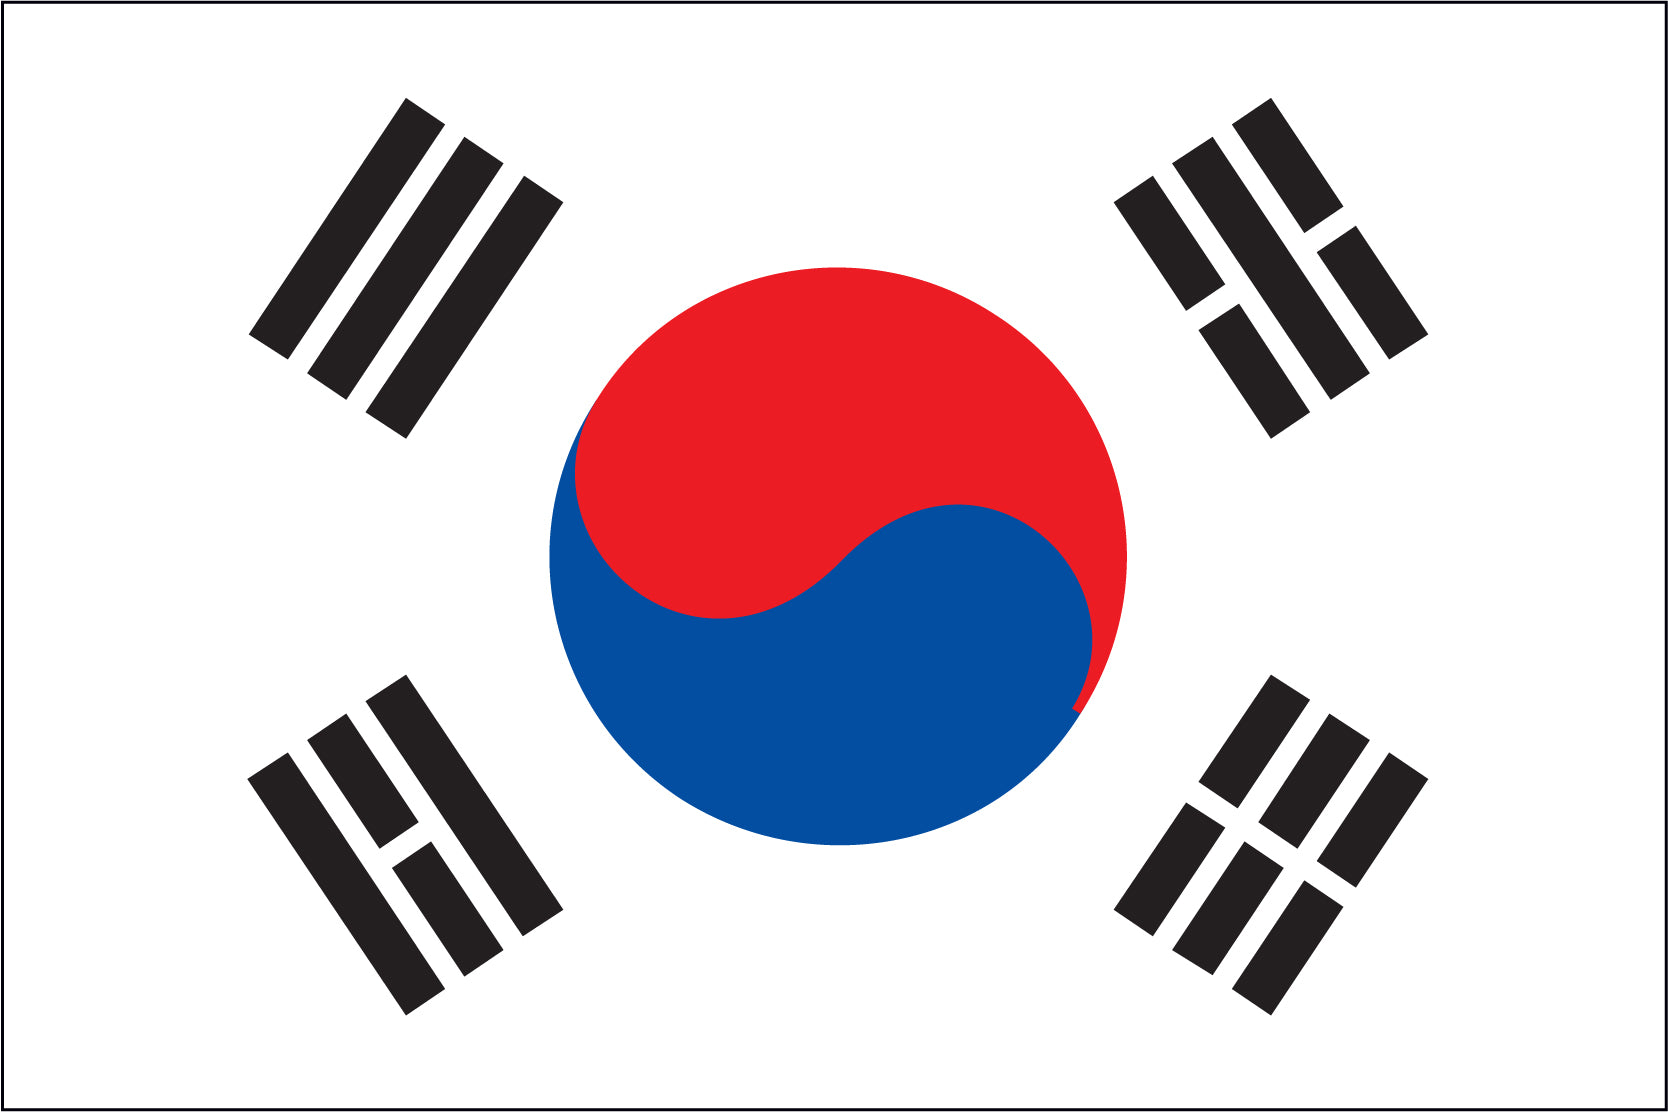 Korea (South) Flag